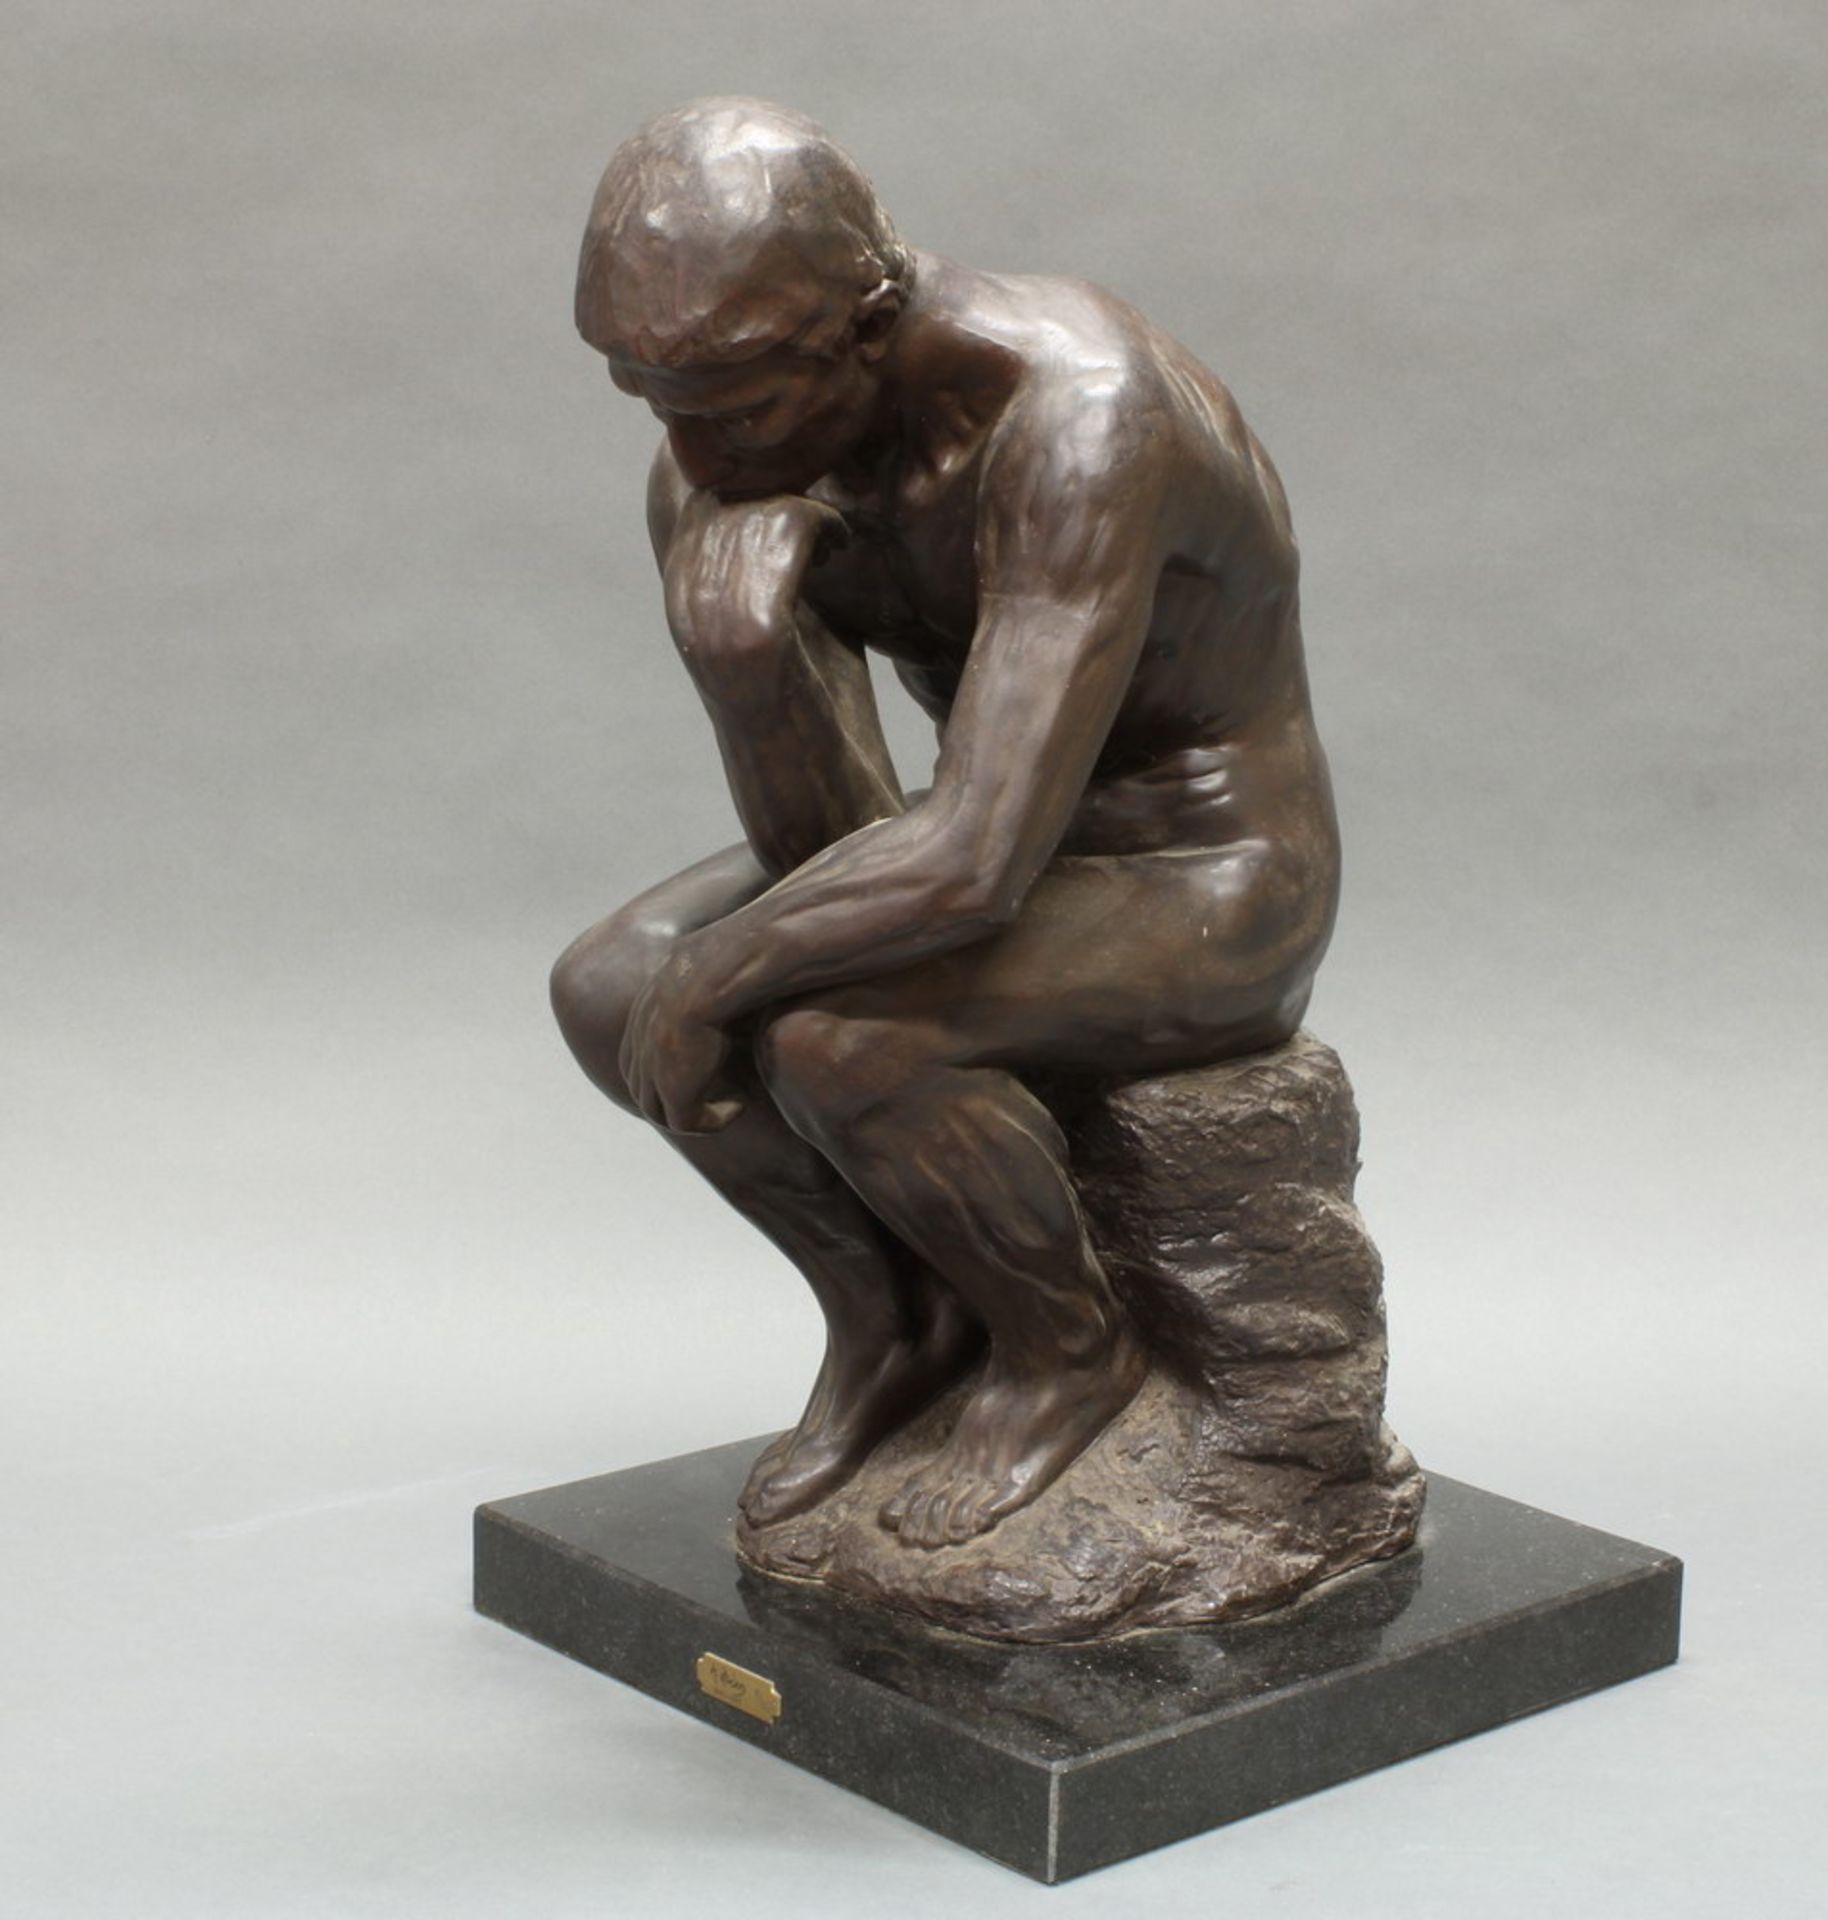 Plastik, dunkelbraun patiniert, wohl Keramik, "Der Denker", nach Rodin, neuzeitlich, auf - Bild 3 aus 5